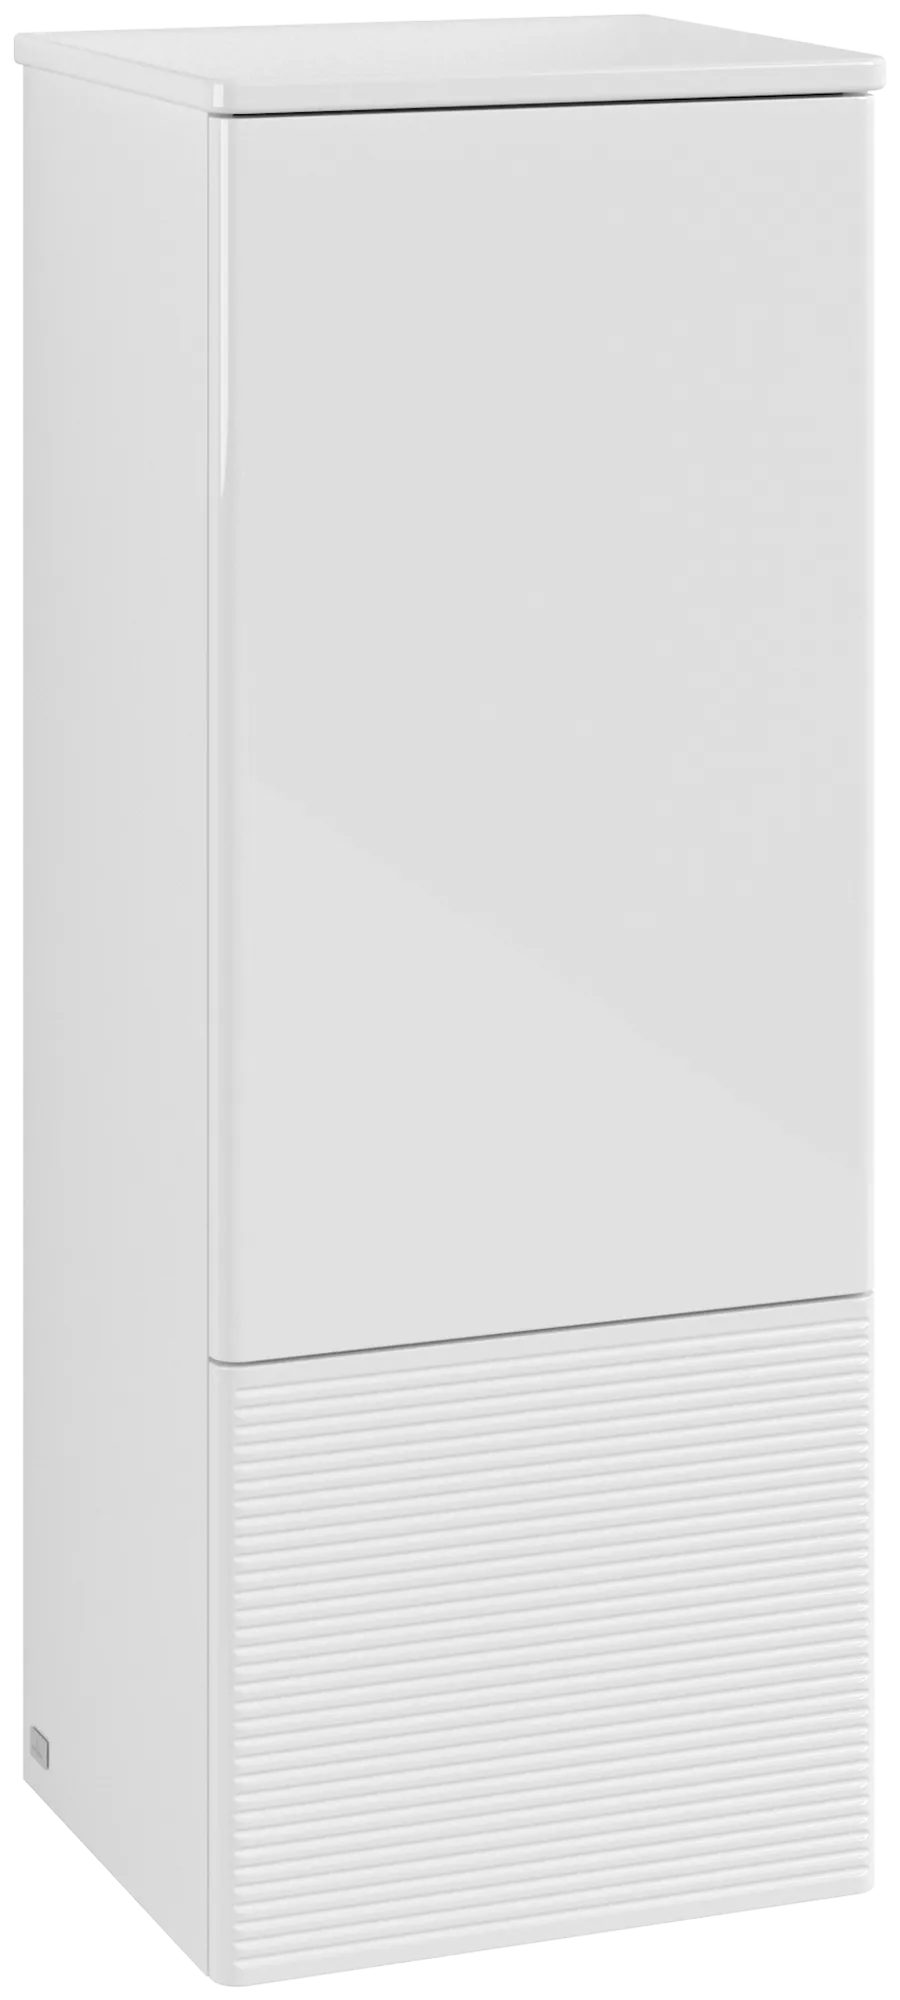 Bild von VILLEROY BOCH Antao Mittelschrank, 1 Tür, 414 x 1039 x 356 mm, Front mit Struktur, Glossy White Lacquer / Glossy White Lacquer #L43100GF